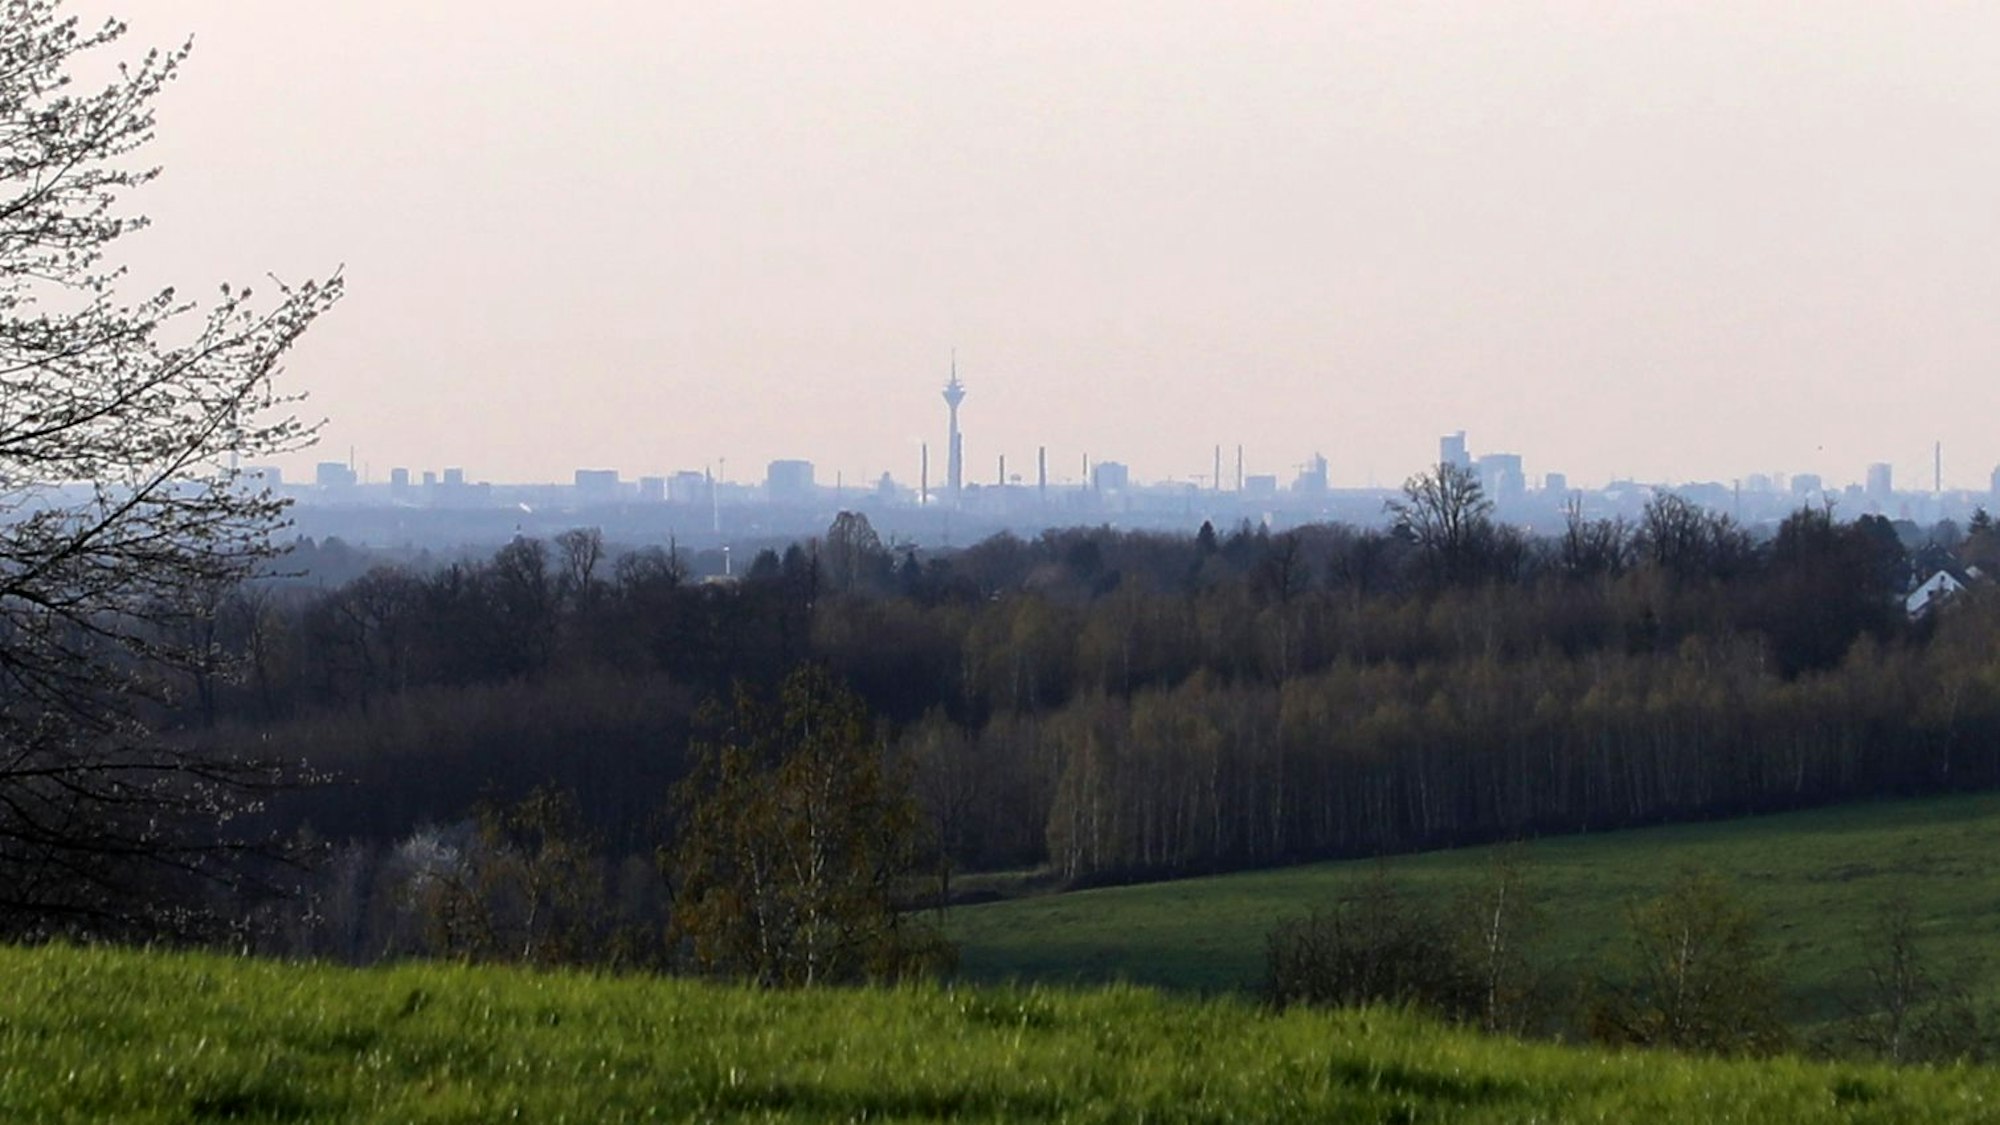 Am Horizont einer Landschaft ist eine Stadt-Silhouette mit einem markanten Fernsehturm zu sehen.